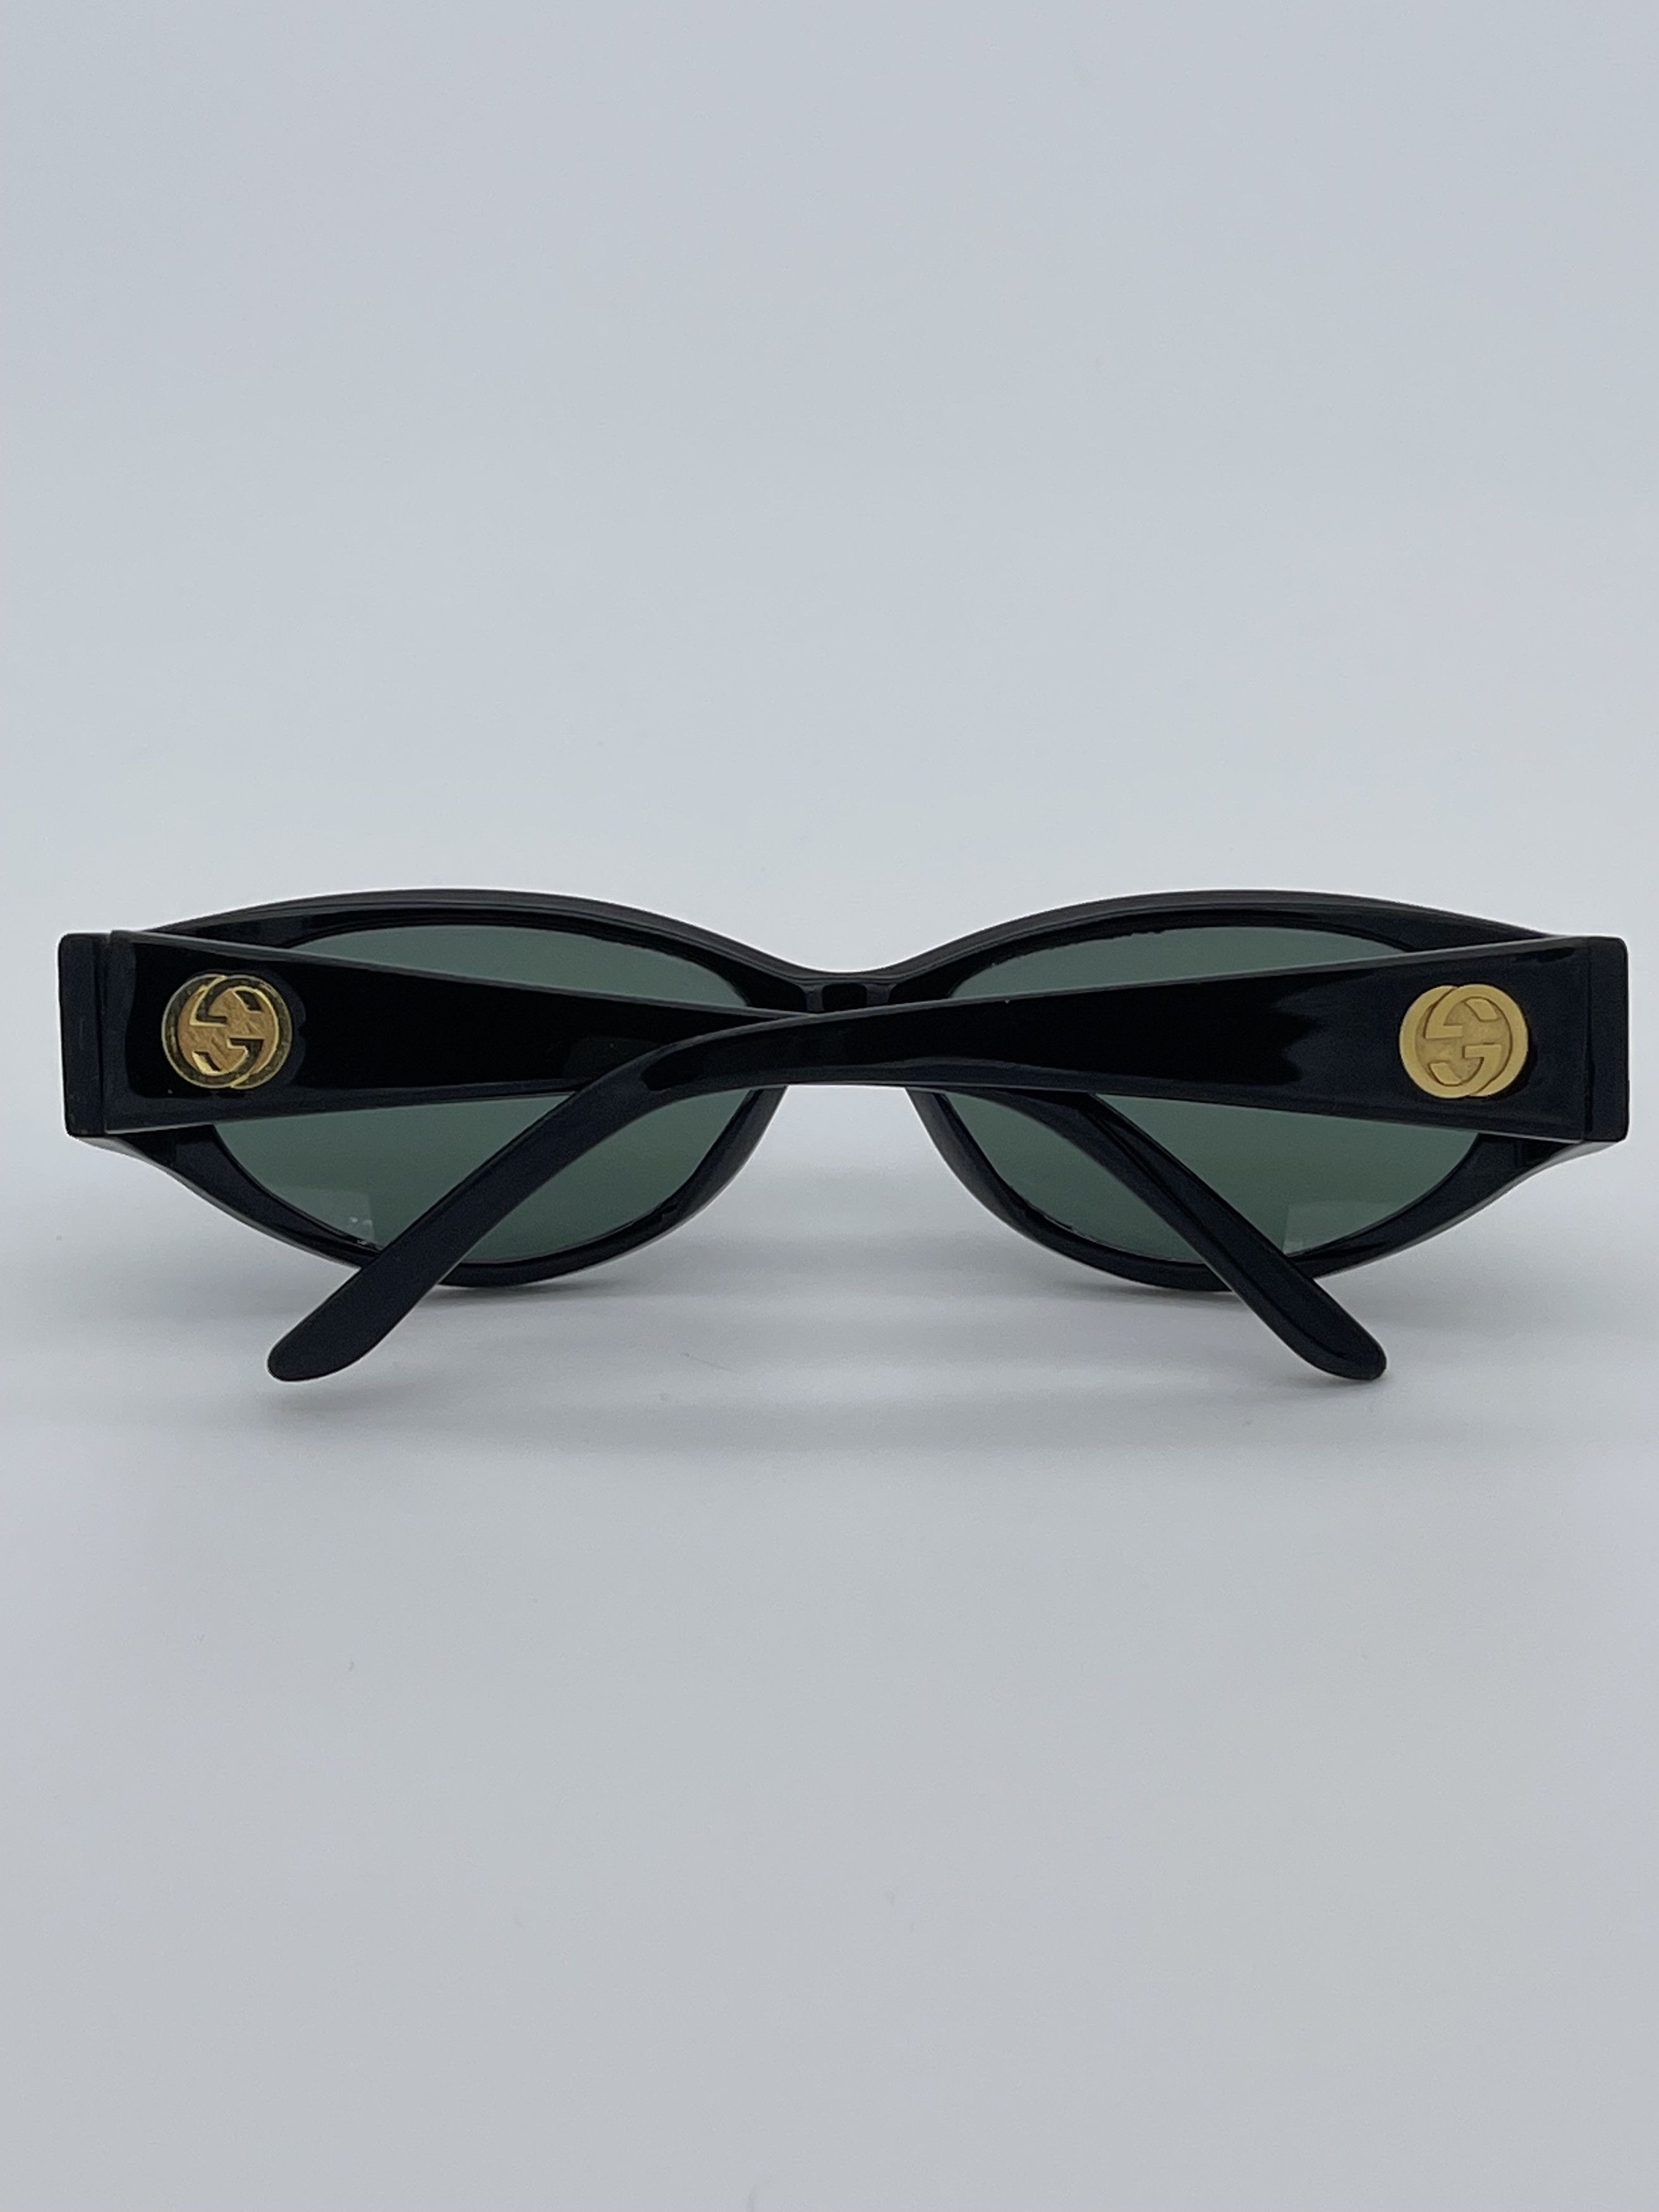 Gucci Rare Vintage Gucci Black Sunglasses Size ONE SIZE - 6 Preview